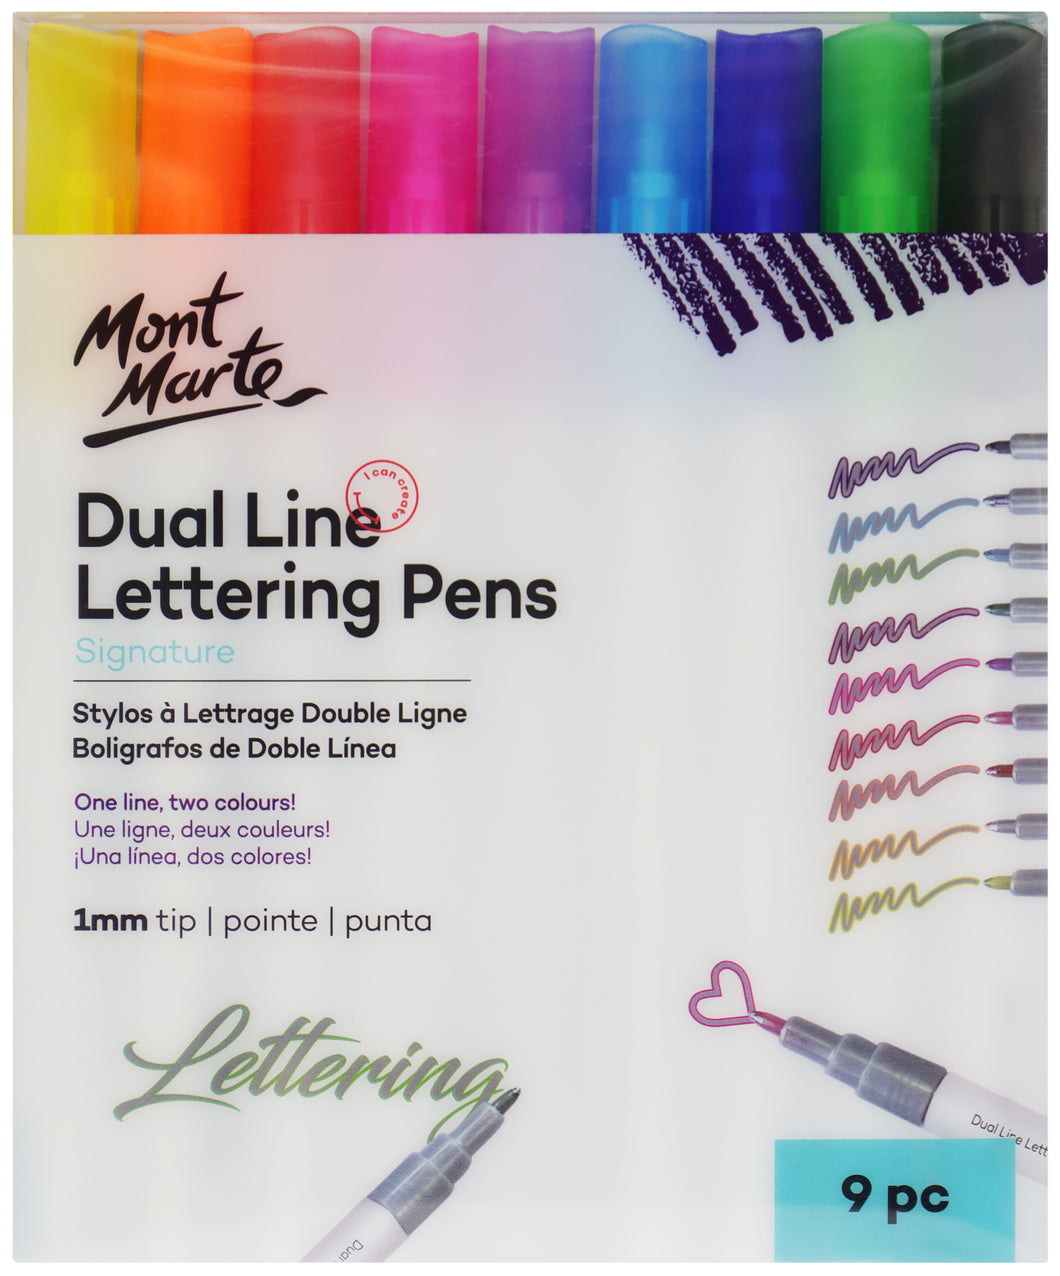 Monte Marte Dual Line Lettering Pens 1mm Tip 9pc